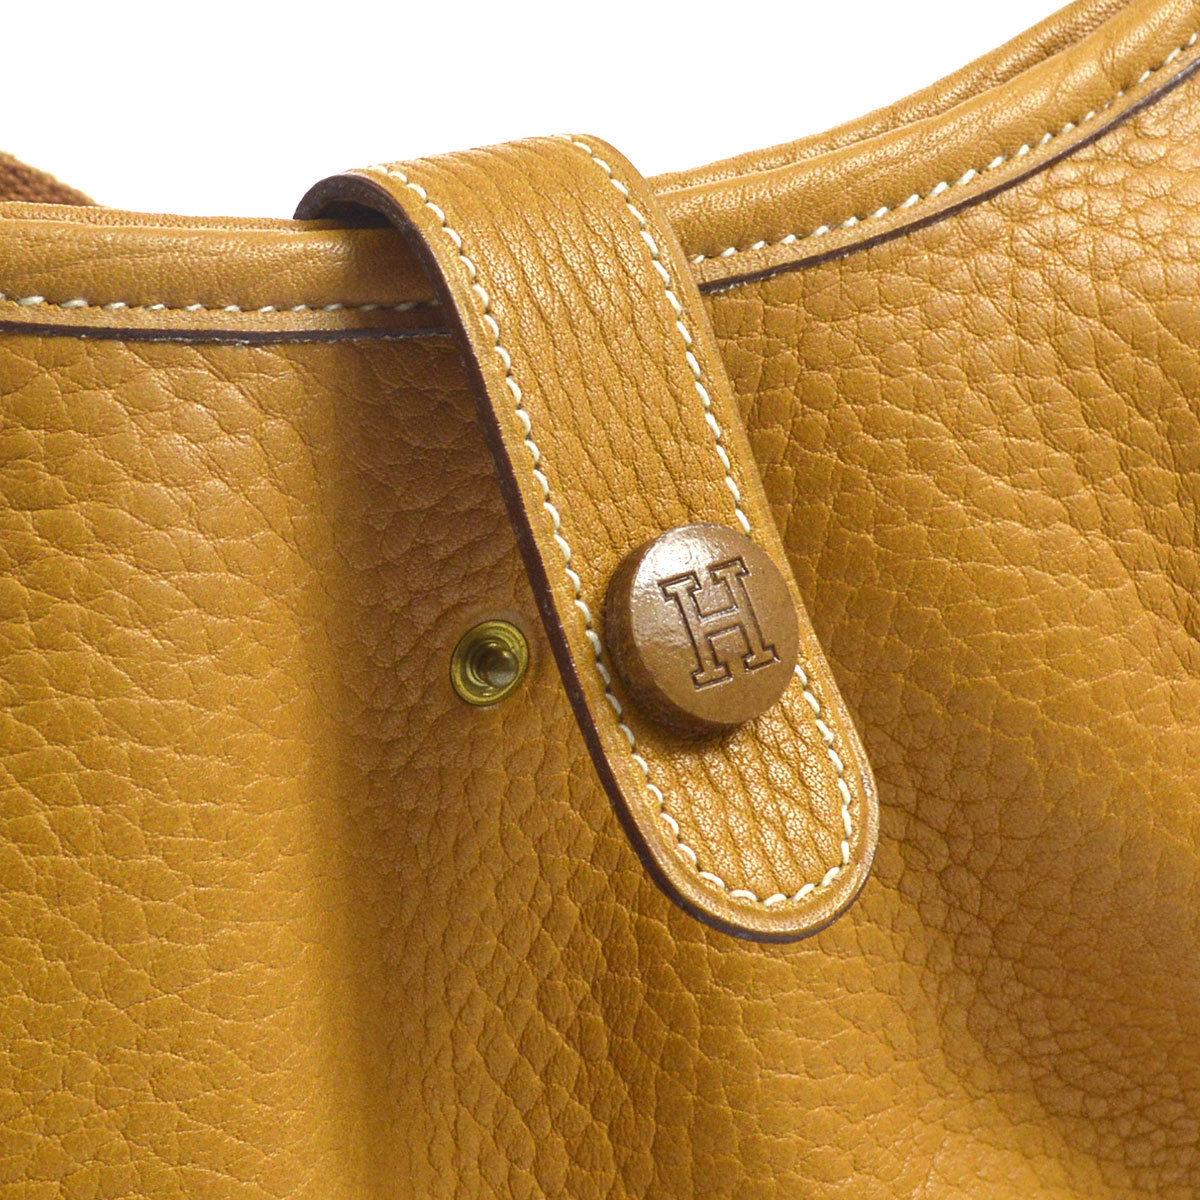 Hermes Mustard Leather Hobo Style Shoulder Crossbody Saddle Bag

Leather
Gold tone hardware
Made in France
Date code present
Shoulder strap drop 22